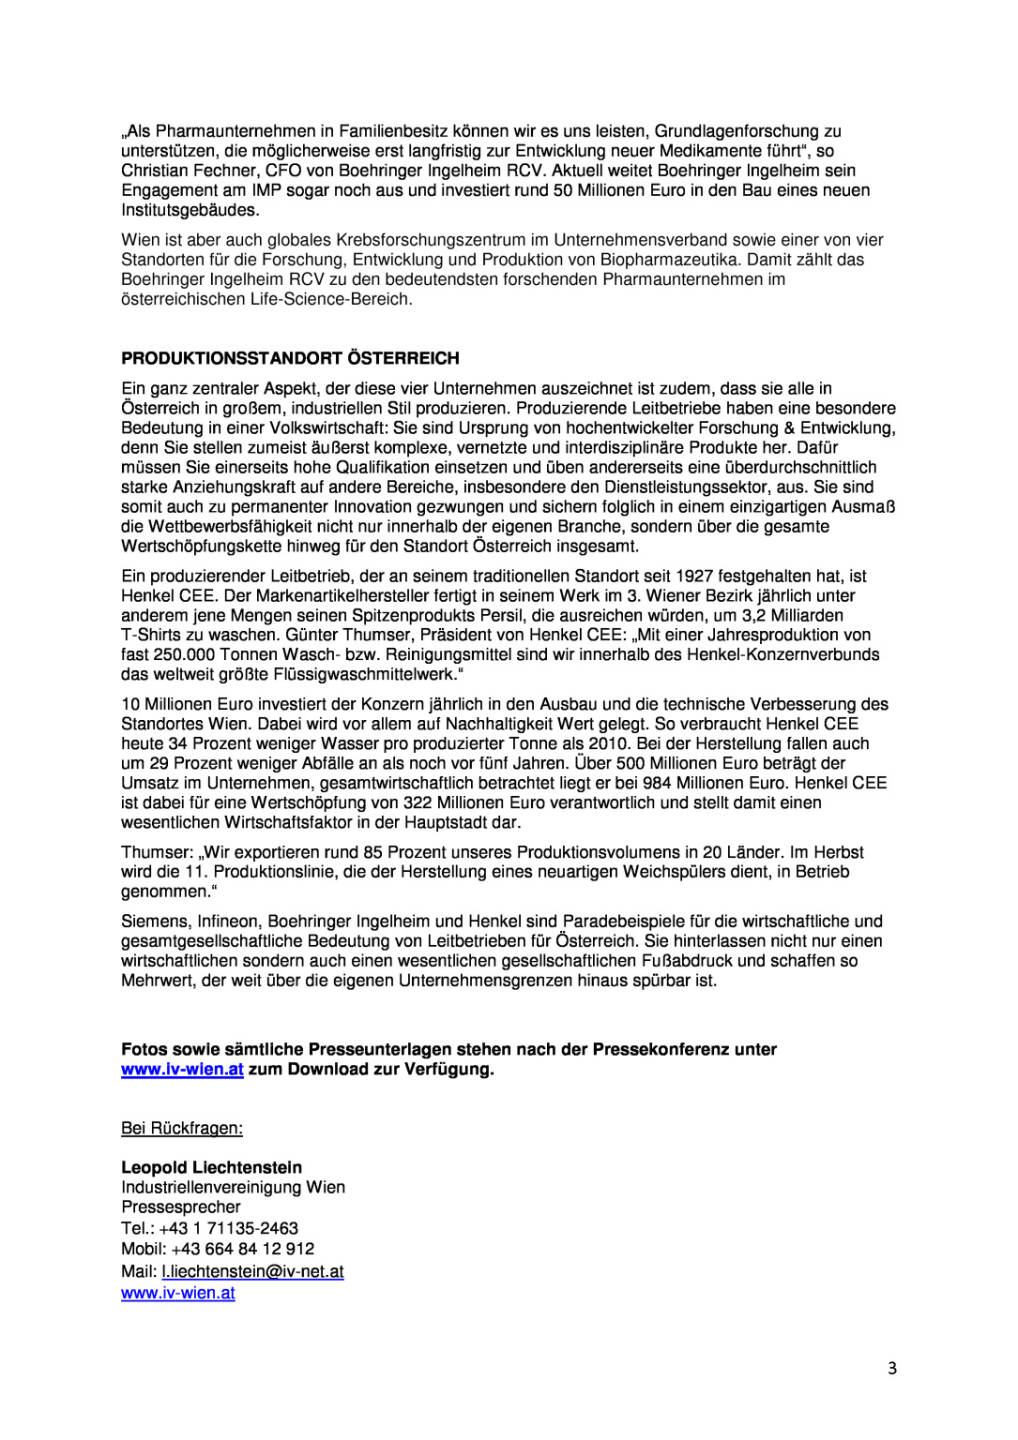 Industriellenvereinigung: Leitbetriebe in Österreich, Seite 3/3, komplettes Dokument unter http://boerse-social.com/static/uploads/file_1066_industriellenvereinigung_leitbetriebe_in_osterreich.pdf